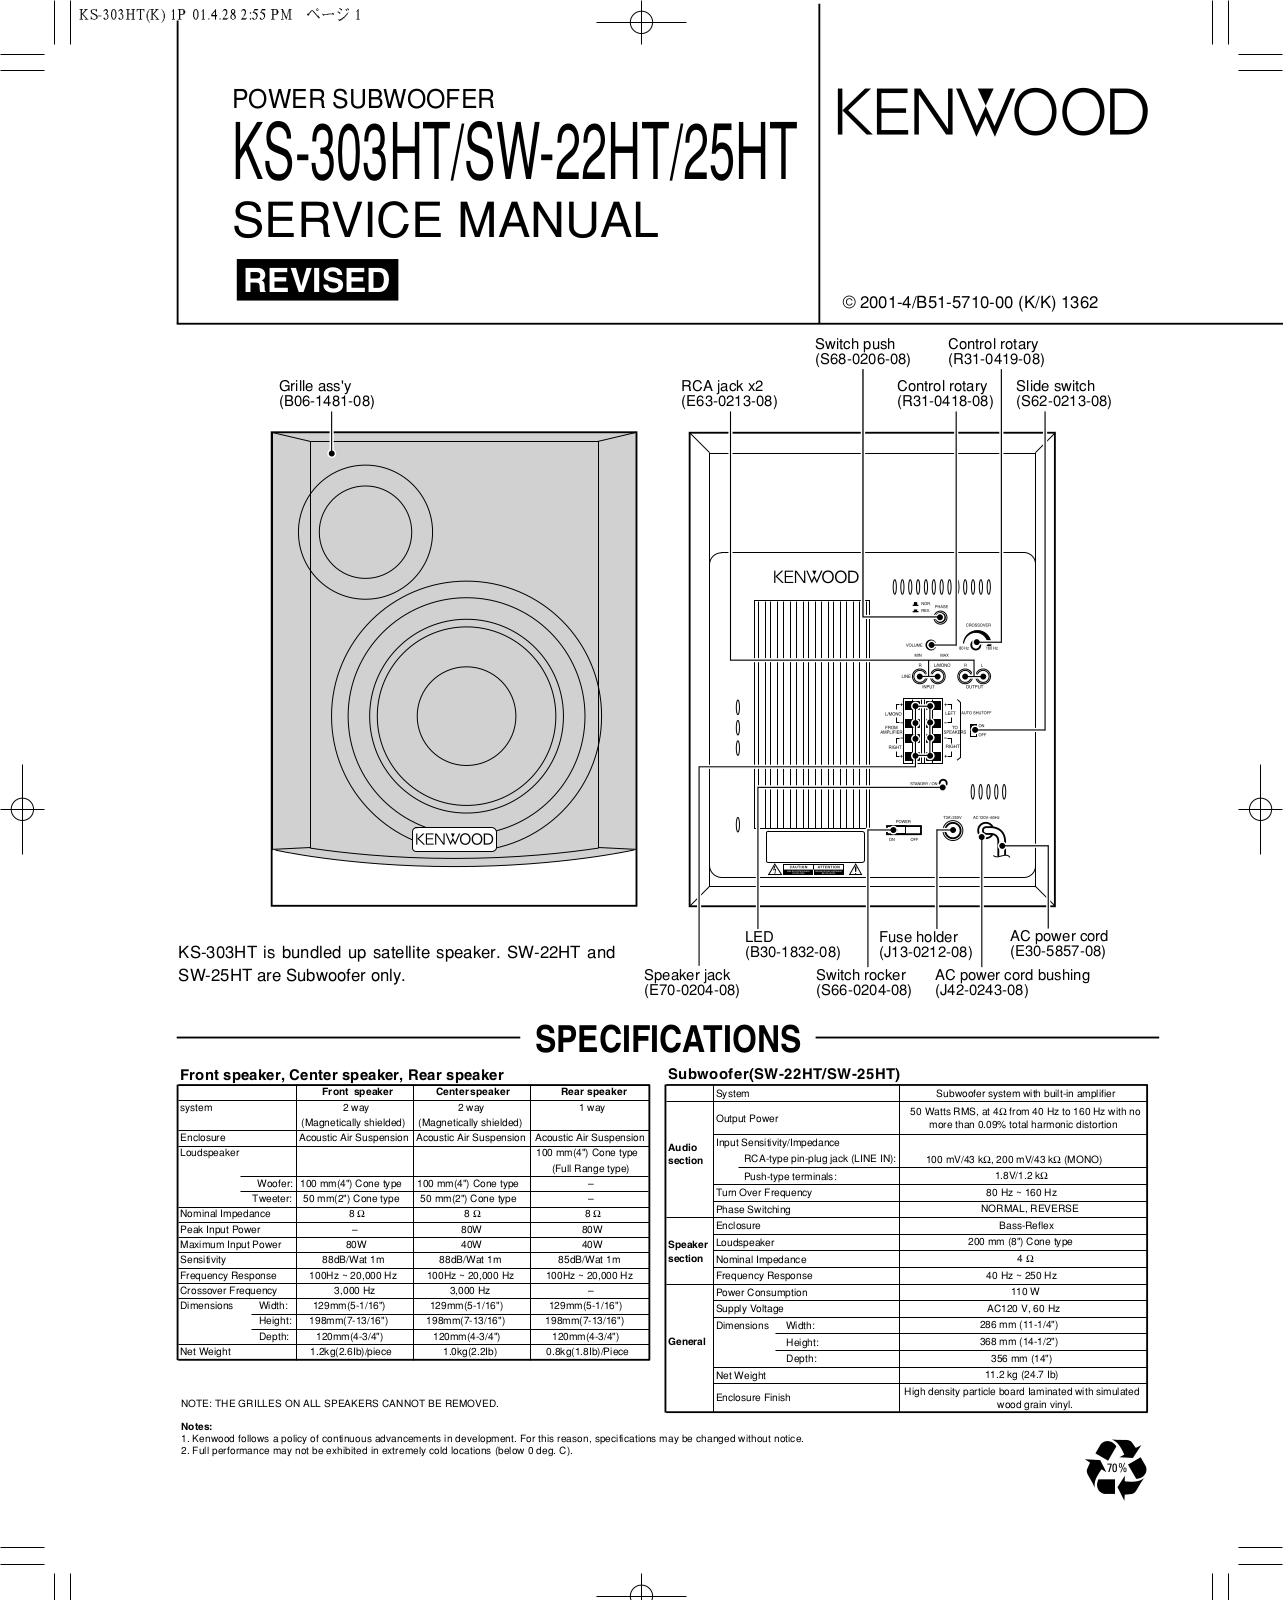 Kenwood KS-303HT, SW-22HT, SW-25HT Service Manual